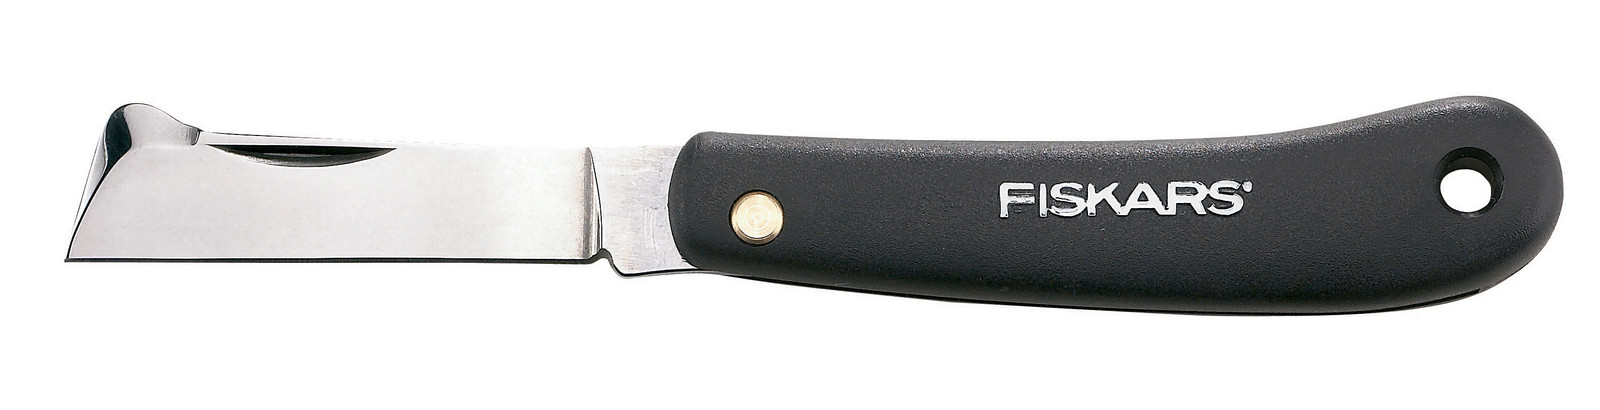 Отзывы нож складной Fiskars 1001625